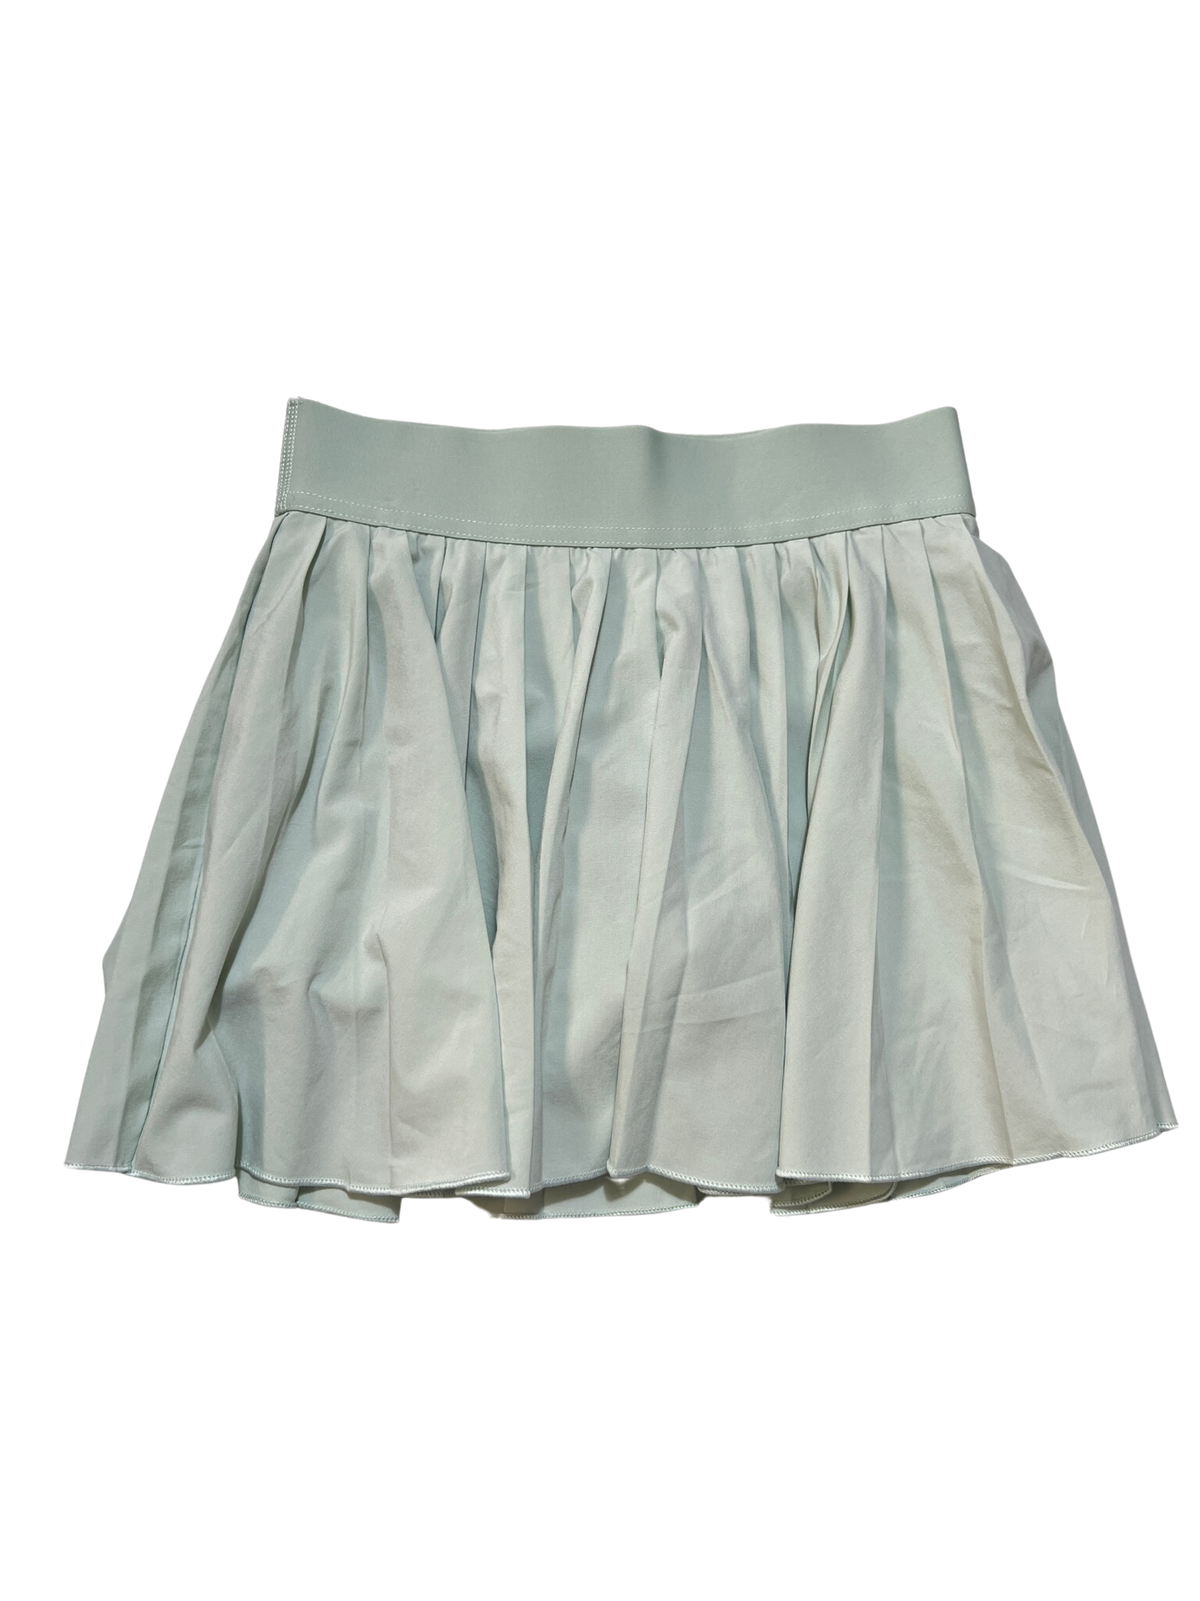 TNA- Green Tennis Skirt